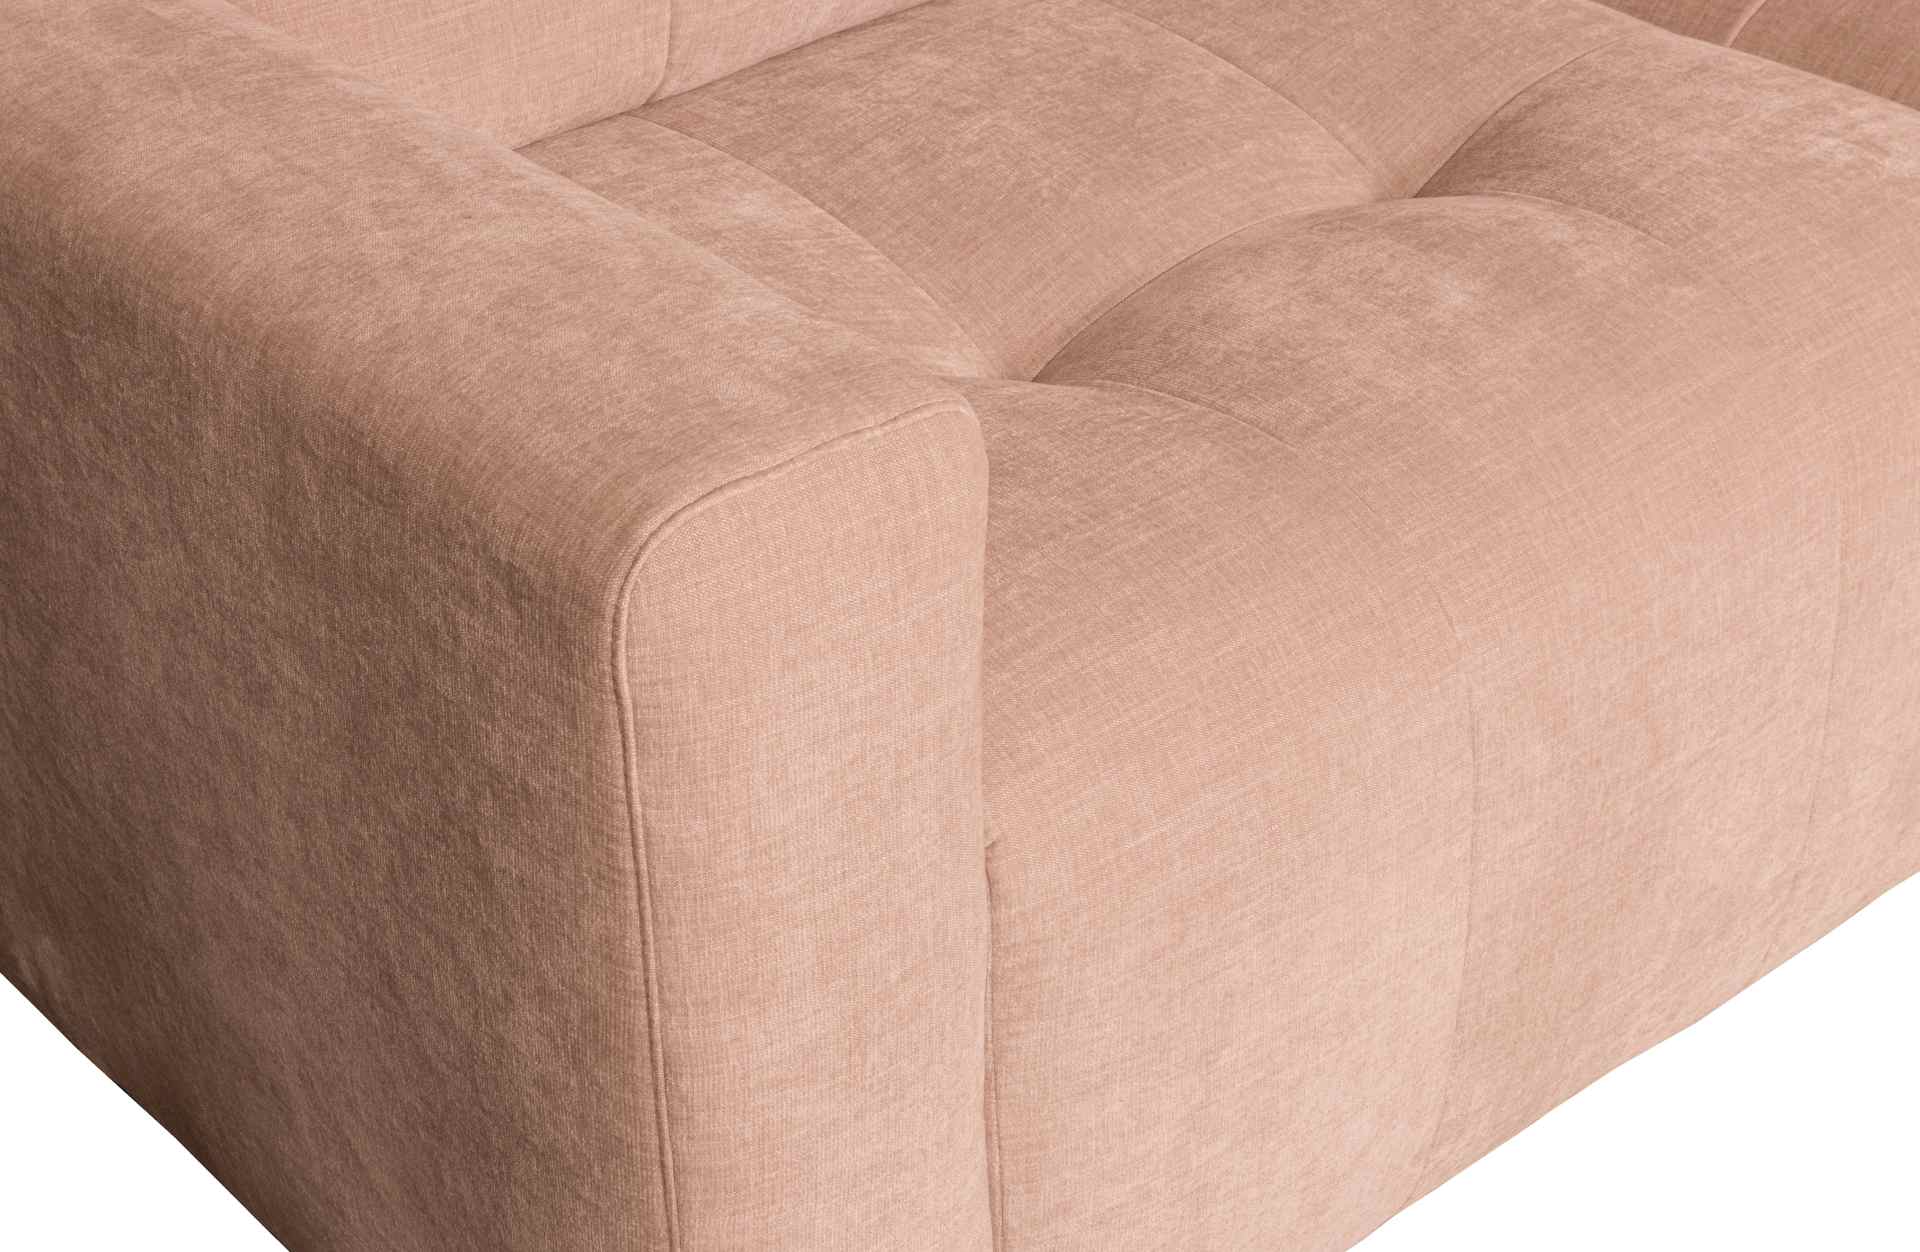 Die Chaise Lounge Bar überzeugt mit ihrem modernen Design. Gefertigt wurde sie aus gewebten Stoff, welcher einen rosa Farbton besitzen. Das Gestell ist aus Kunststoff und hat eine schwarze Farbe. Die Lounge hat eine Breite von 280 cm.